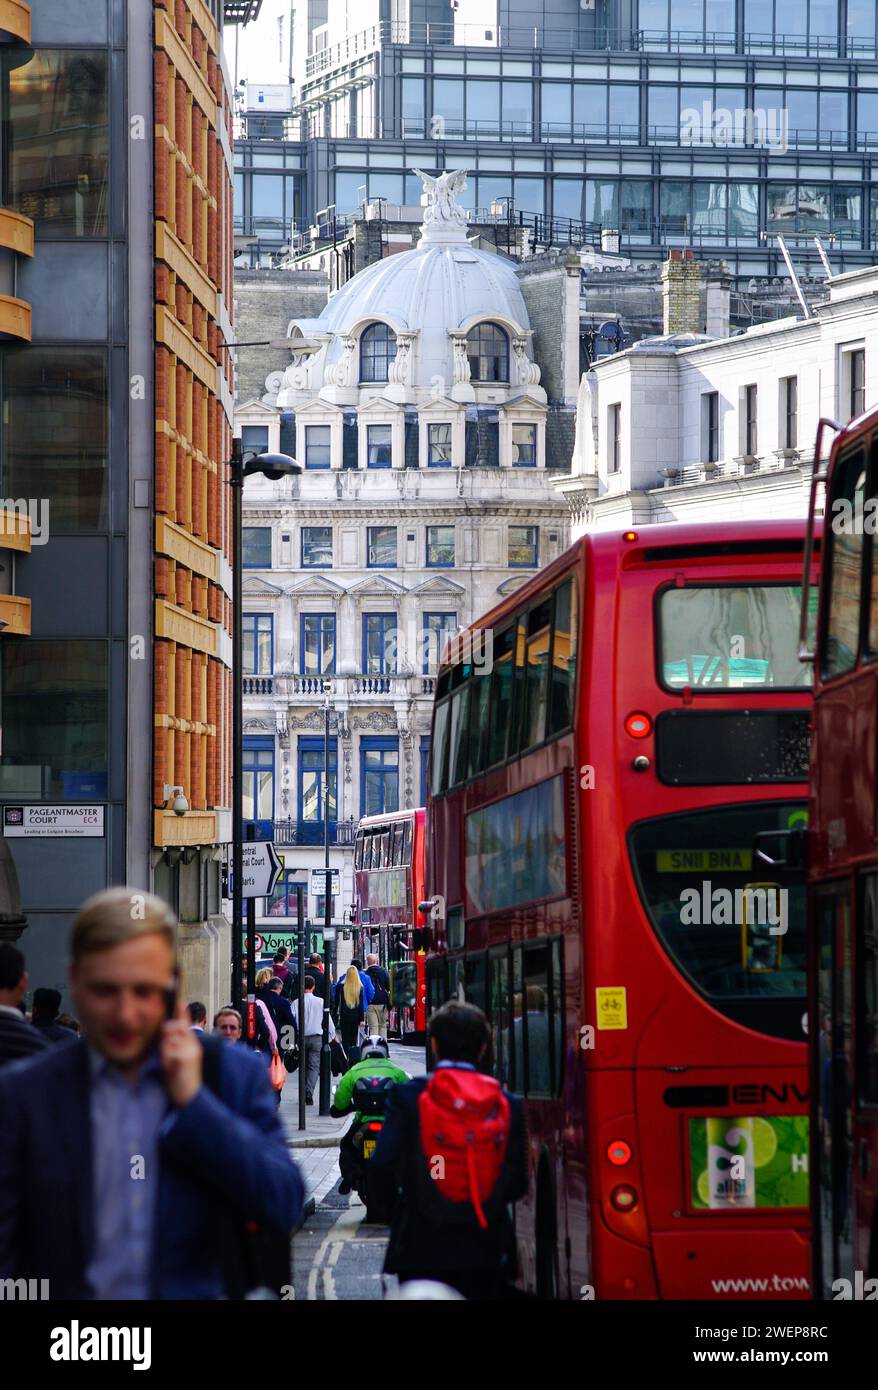 Londra: Tradition gehört dazu. - Ein roter Doppeldecker-Bus New Routemaster fährt durch die Innenstadt von London. *** La tradizione di Londra ne fa parte Foto Stock